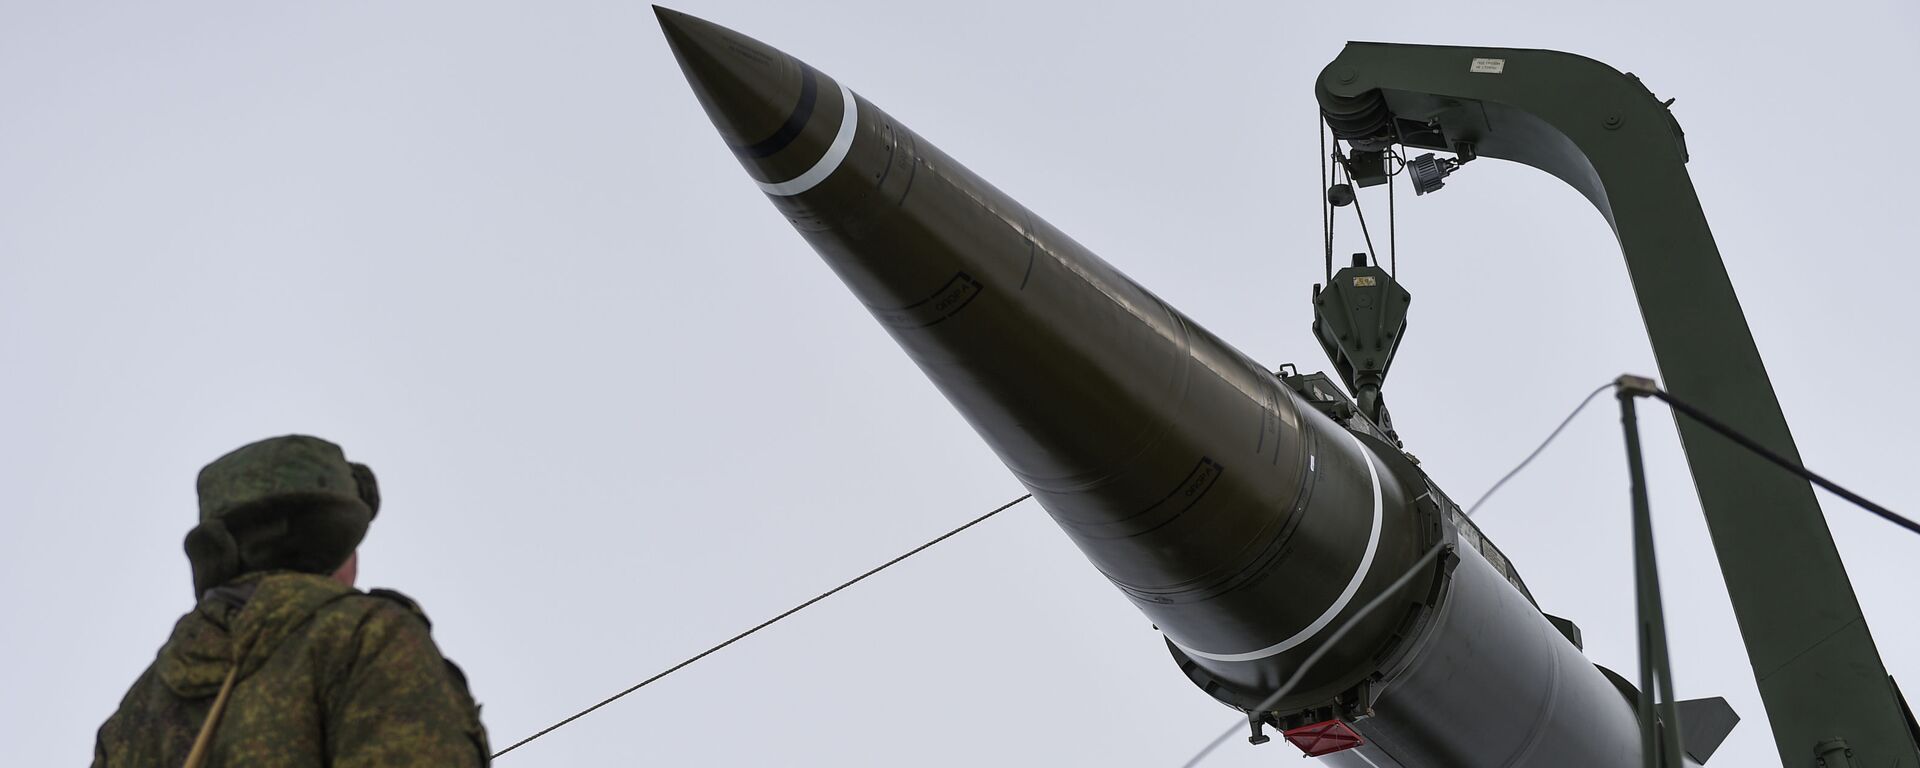 Подготовка к пуску ракеты комплекса Искандер-М с полигона Капустин Яр - Sputnik Армения, 1920, 05.10.2021